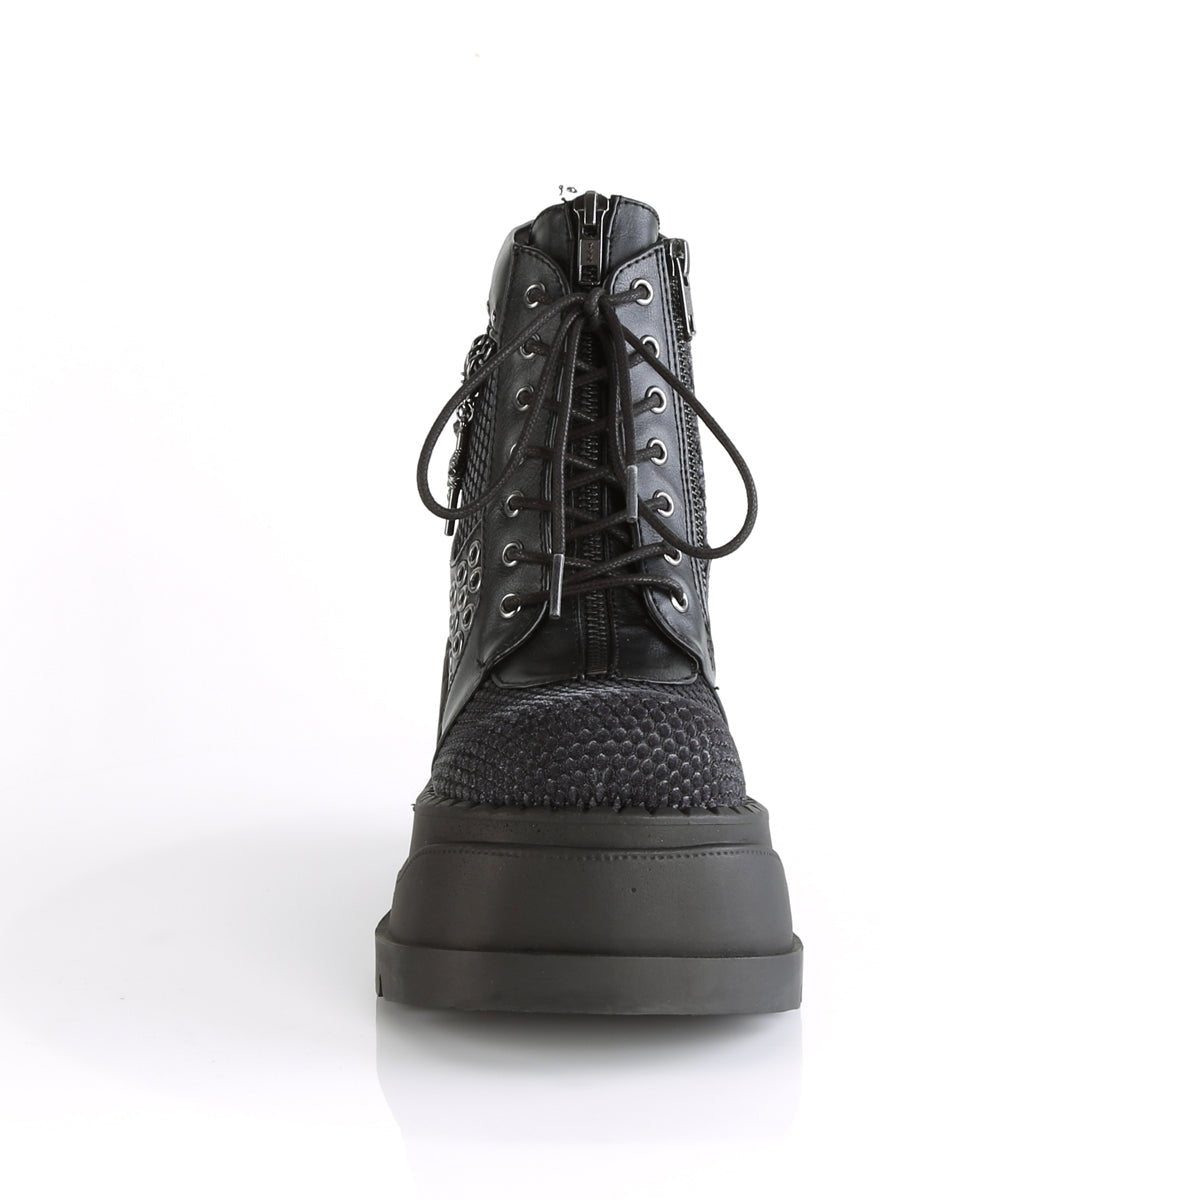 Too Fast | Demonia Stomp 18 | Black & Grey Vegan Leather & Velvet Women's Ankle Boots